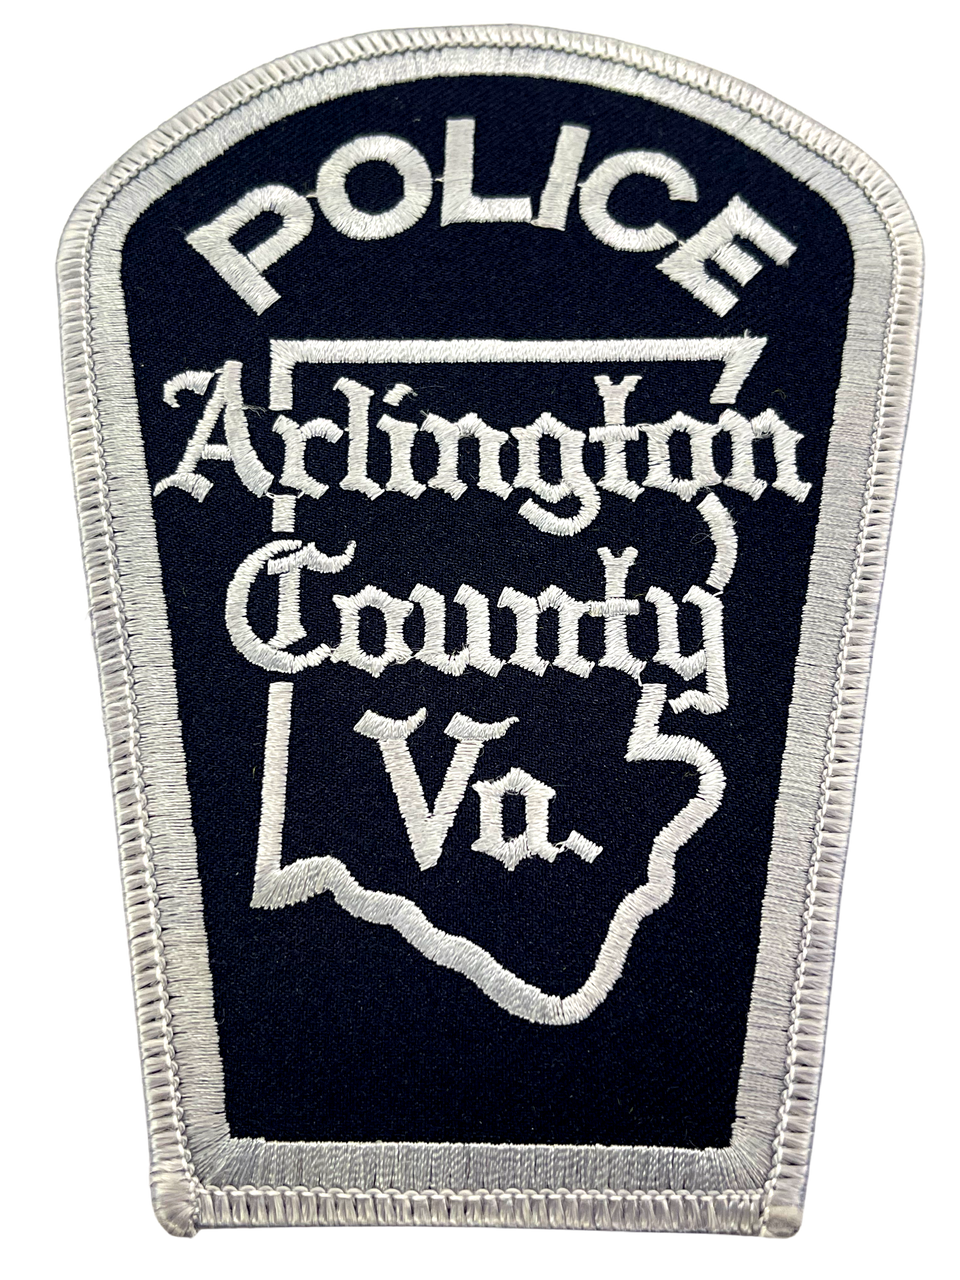 ARLINGTON COUNTY VIRGINIA VA POLICE PATCH 